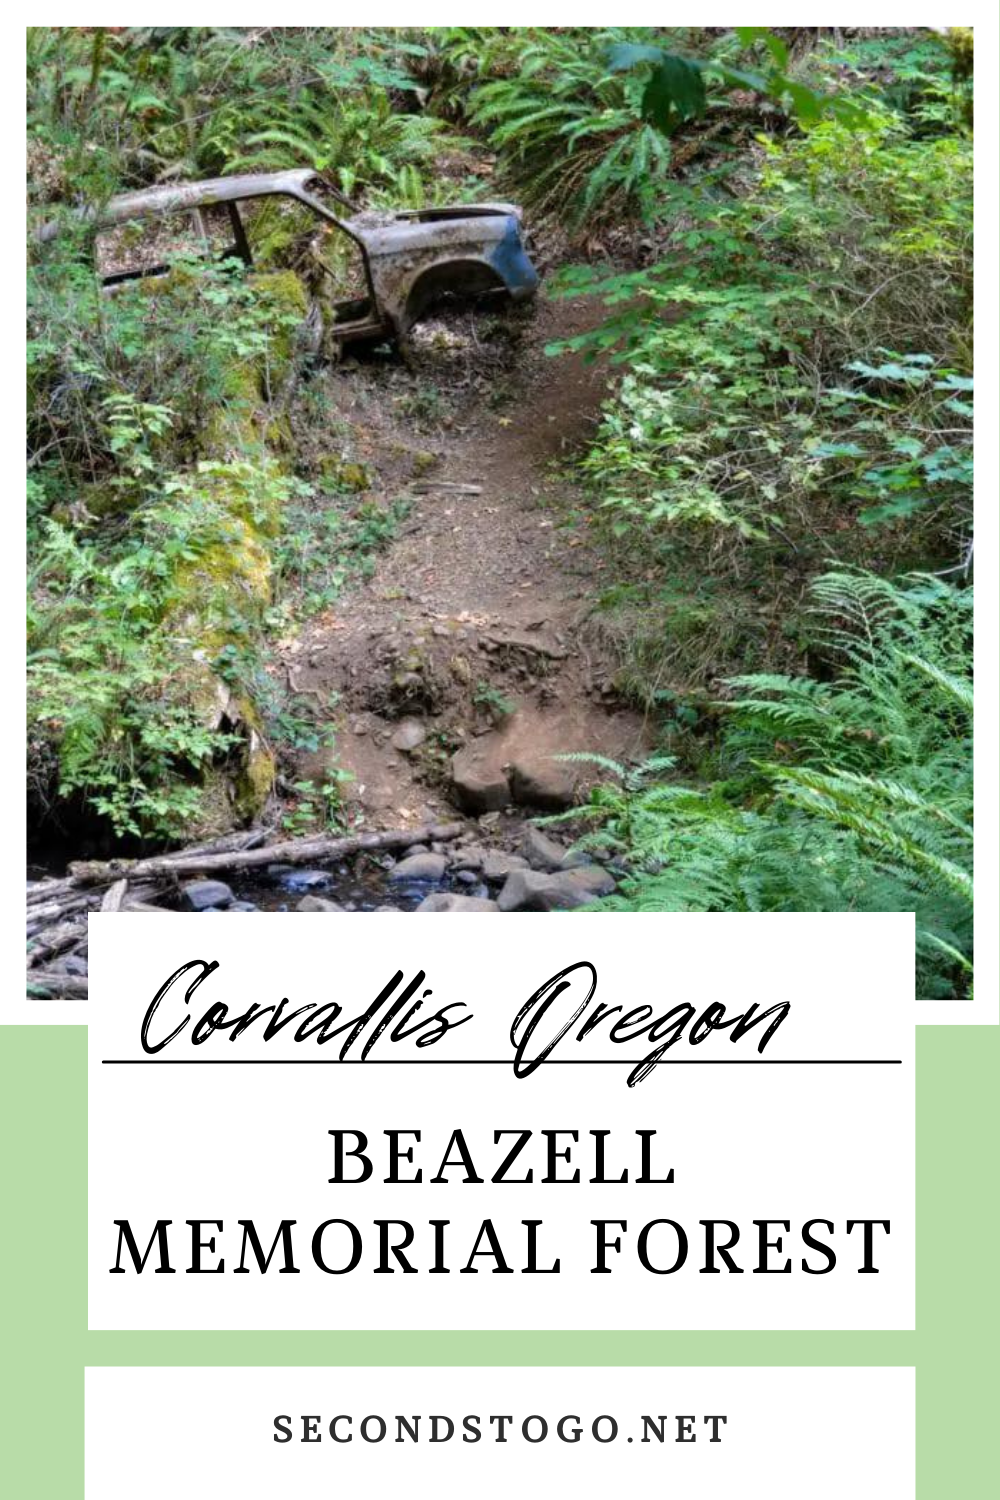 Beazell Memorial Forest